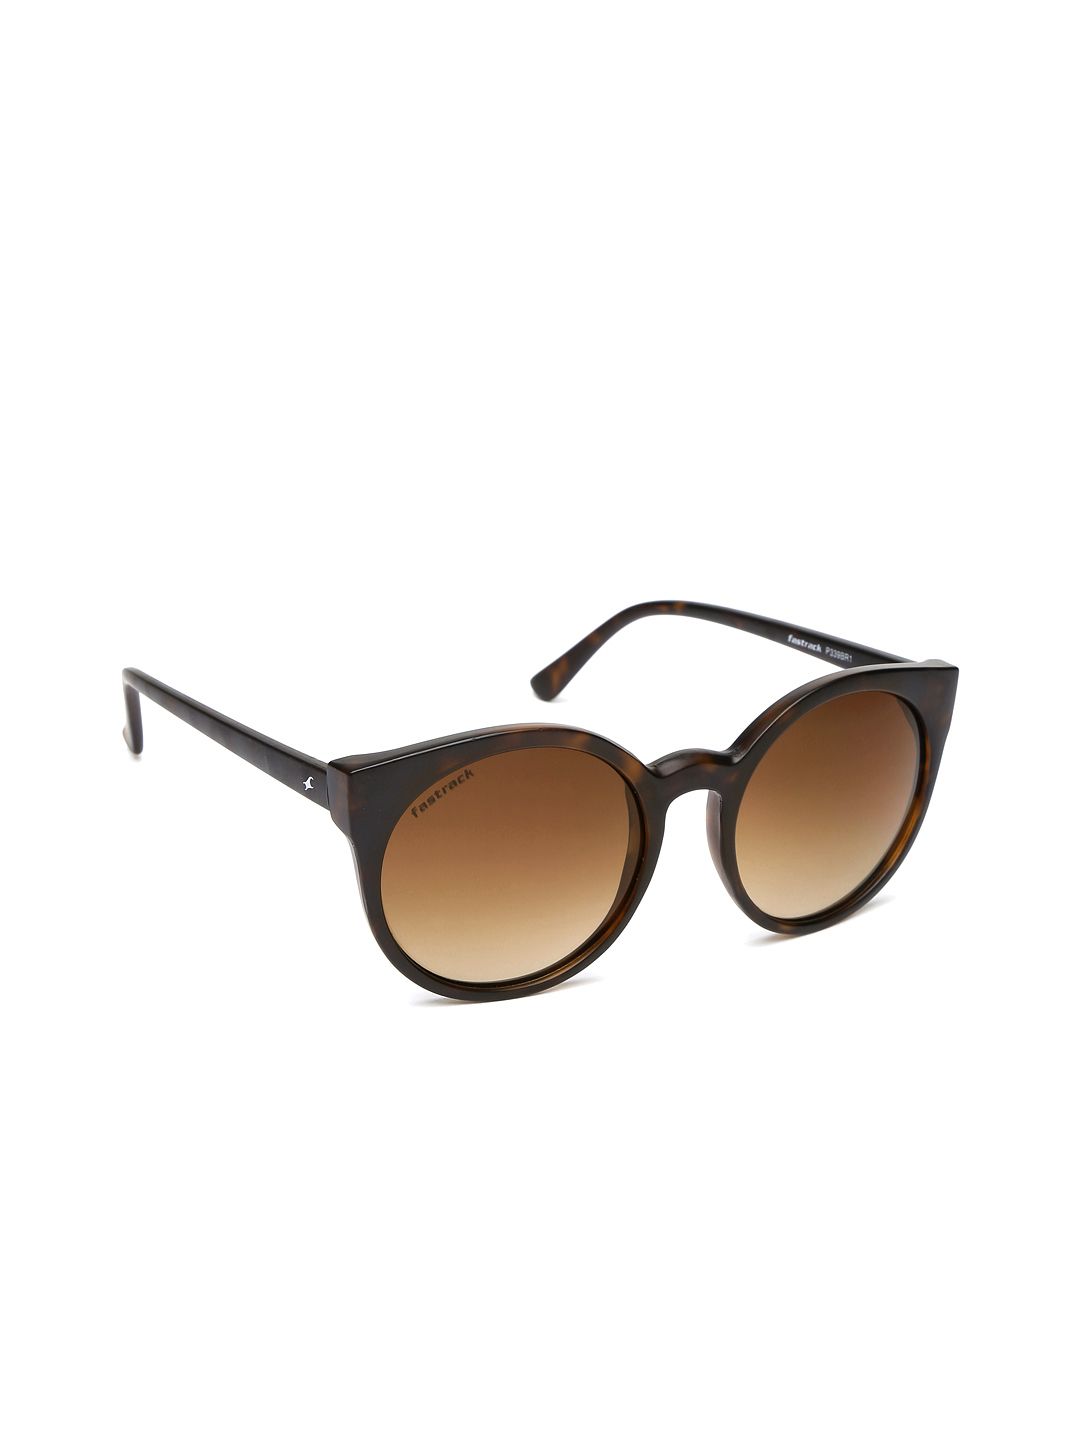 Fastrack Unisex Gradient Sunglasses P339BR1 Price in India